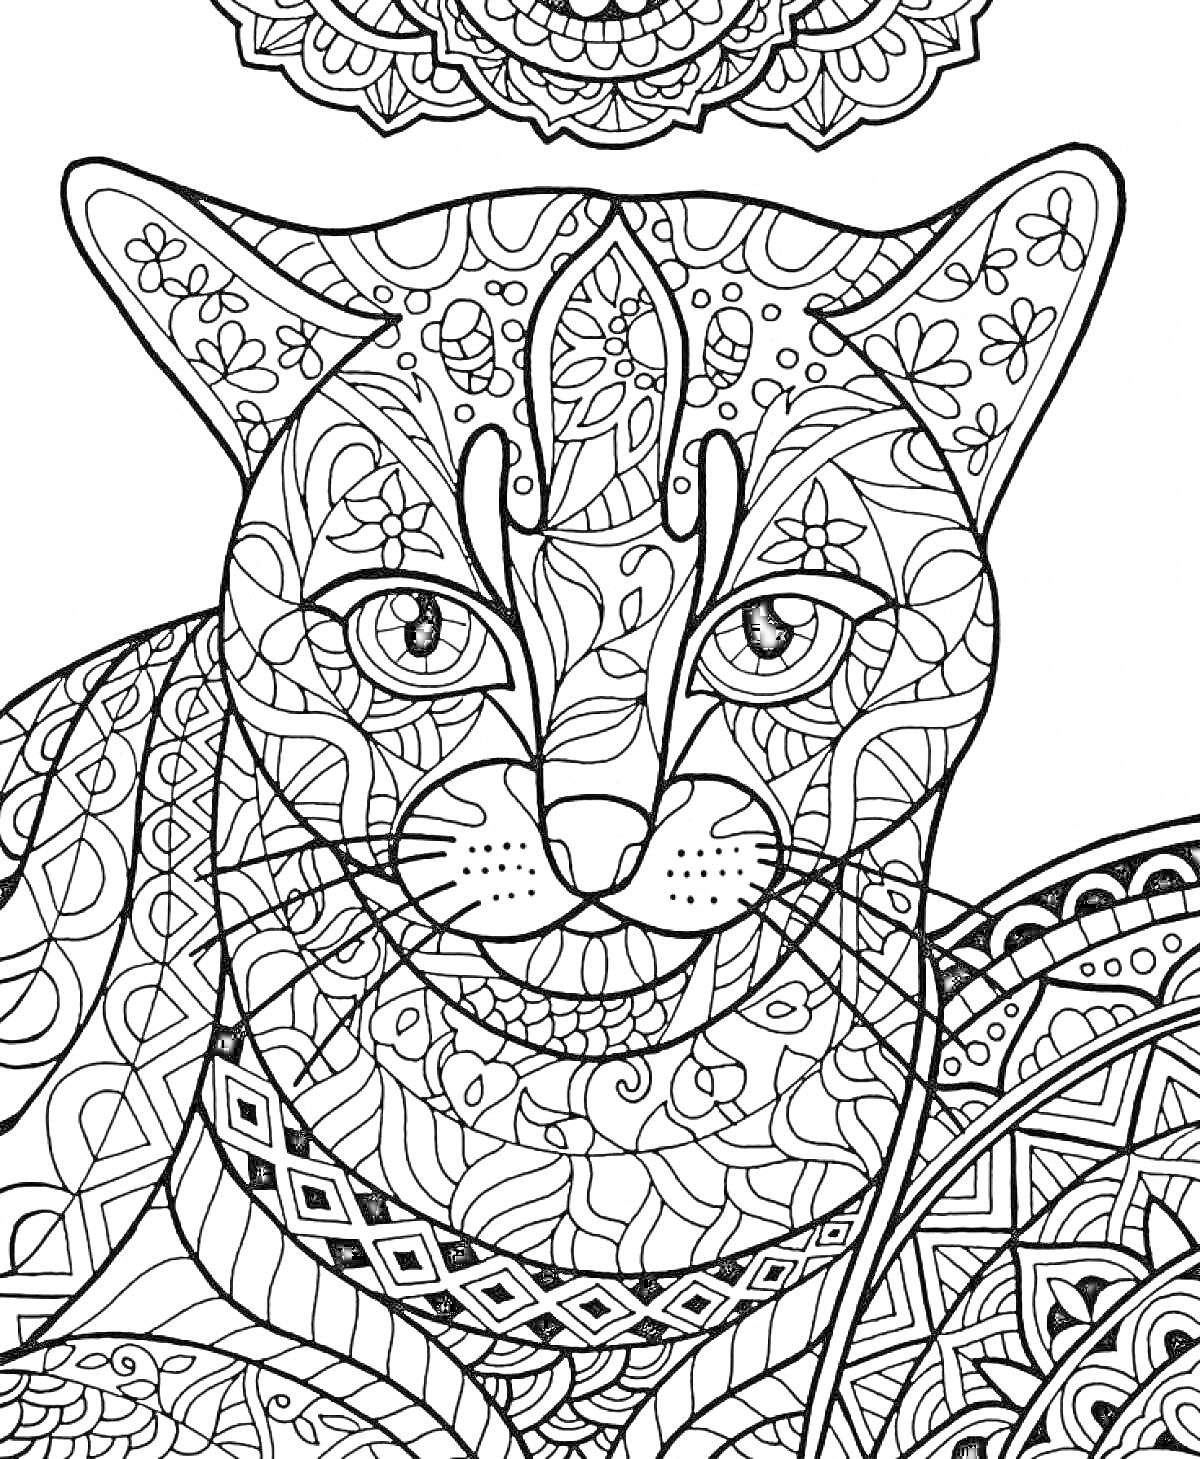 Антистресс раскраска с детализированной кошкой, цветочными узорами и геометрическими элементами